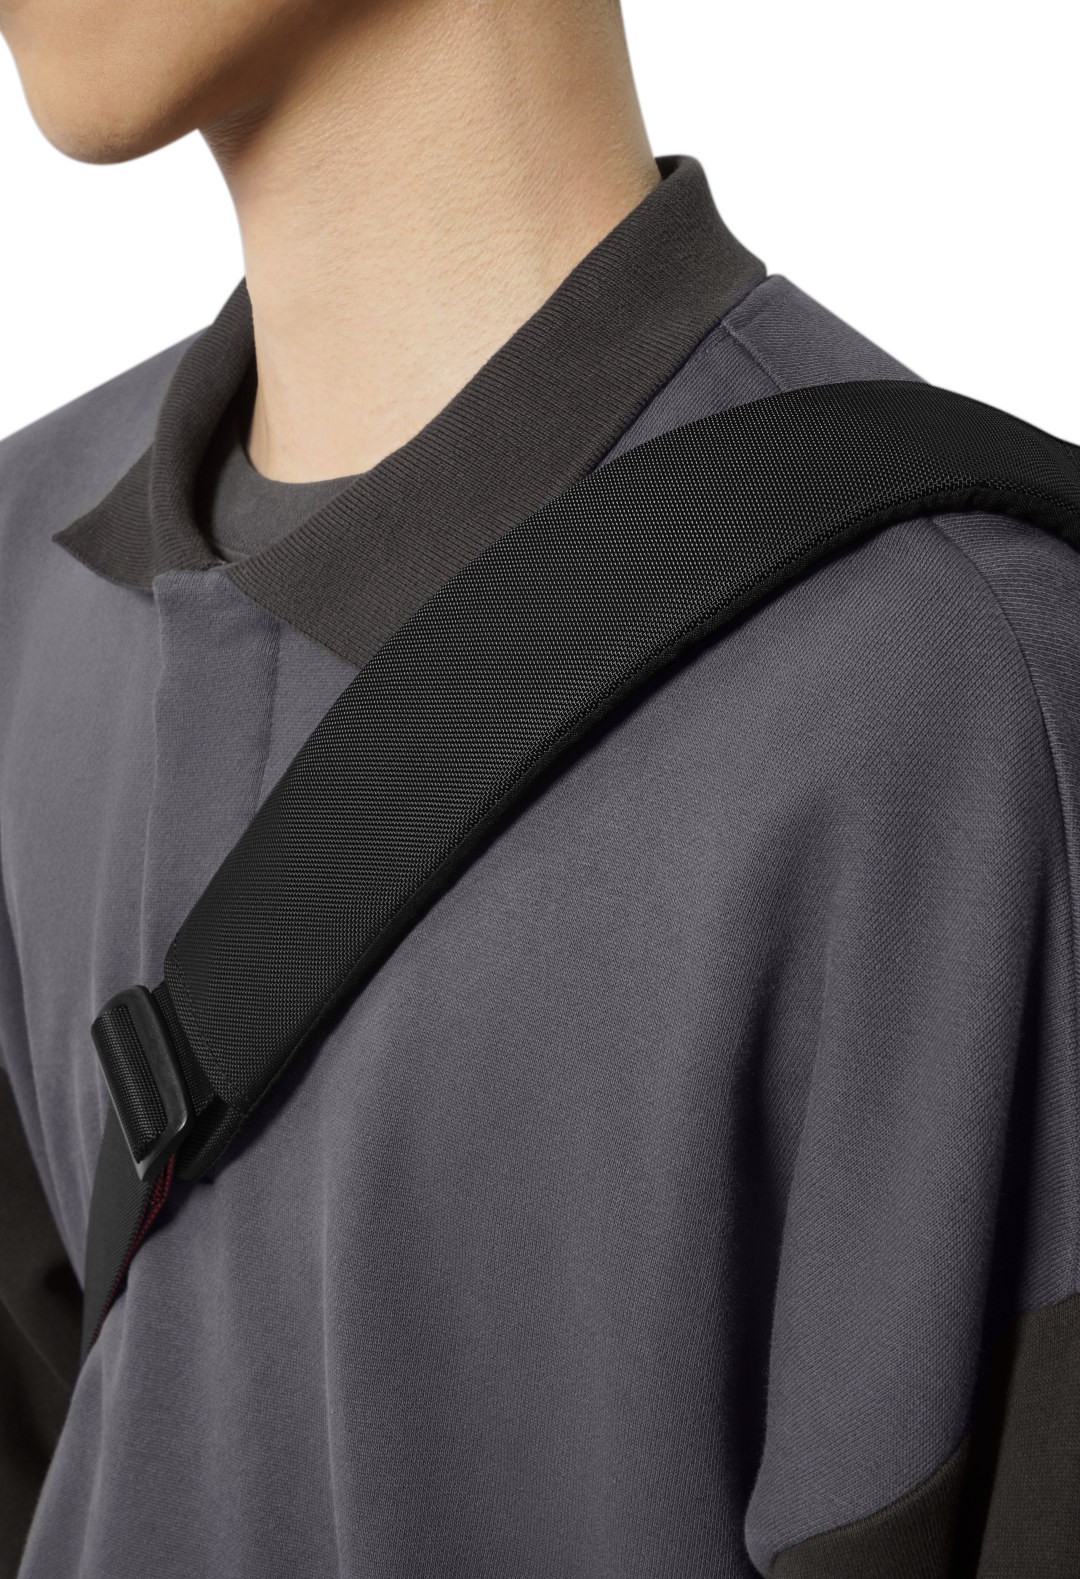 Túi đeo chéo Tomtoc Monster Hunter Rise - H02 Royal Order Sling Bag S, 4L | H02A4S1